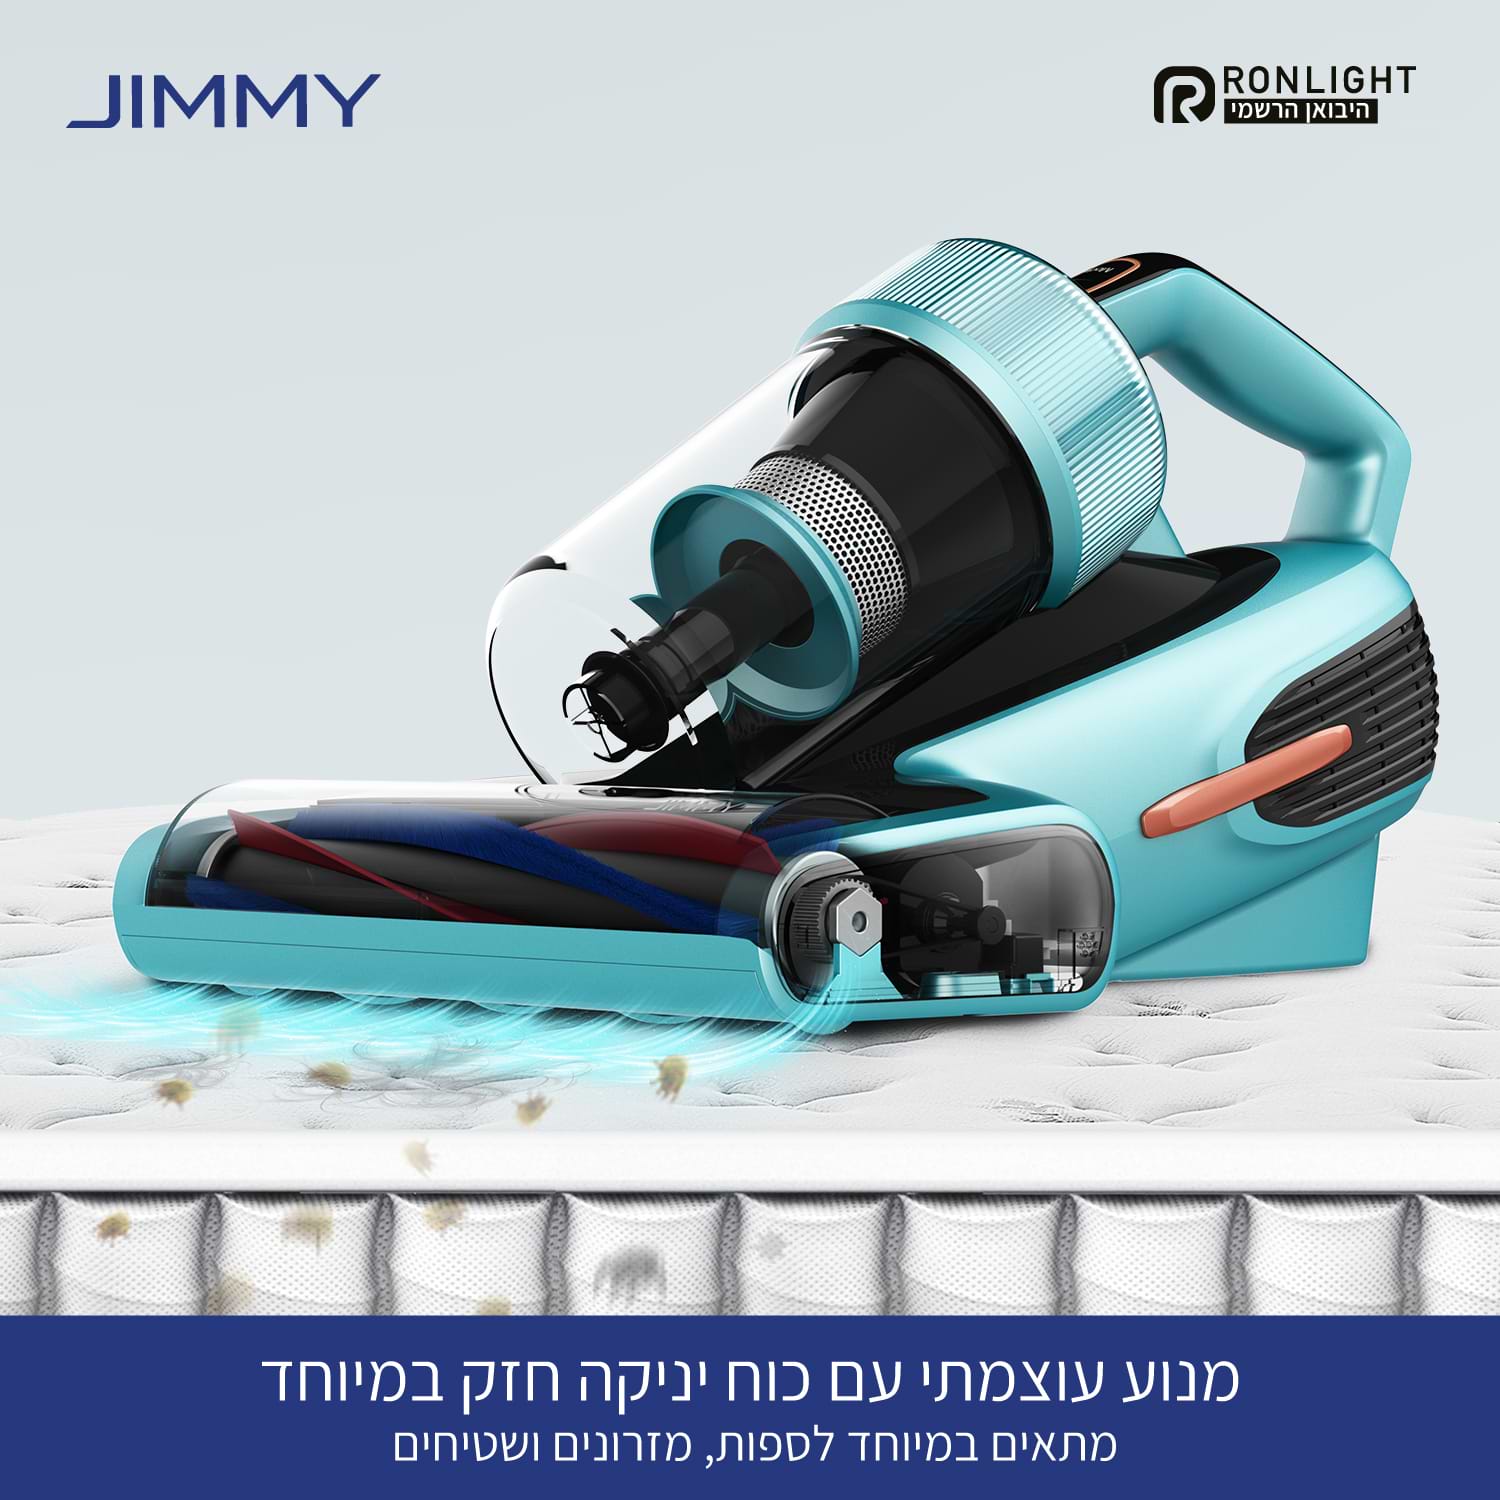 שואב אבק ידני אנטי אלרגני מקצועי לספות  Jimmy BX7 Pro - צבע כחול שנה אחריות ע"י היבואן הרשמי